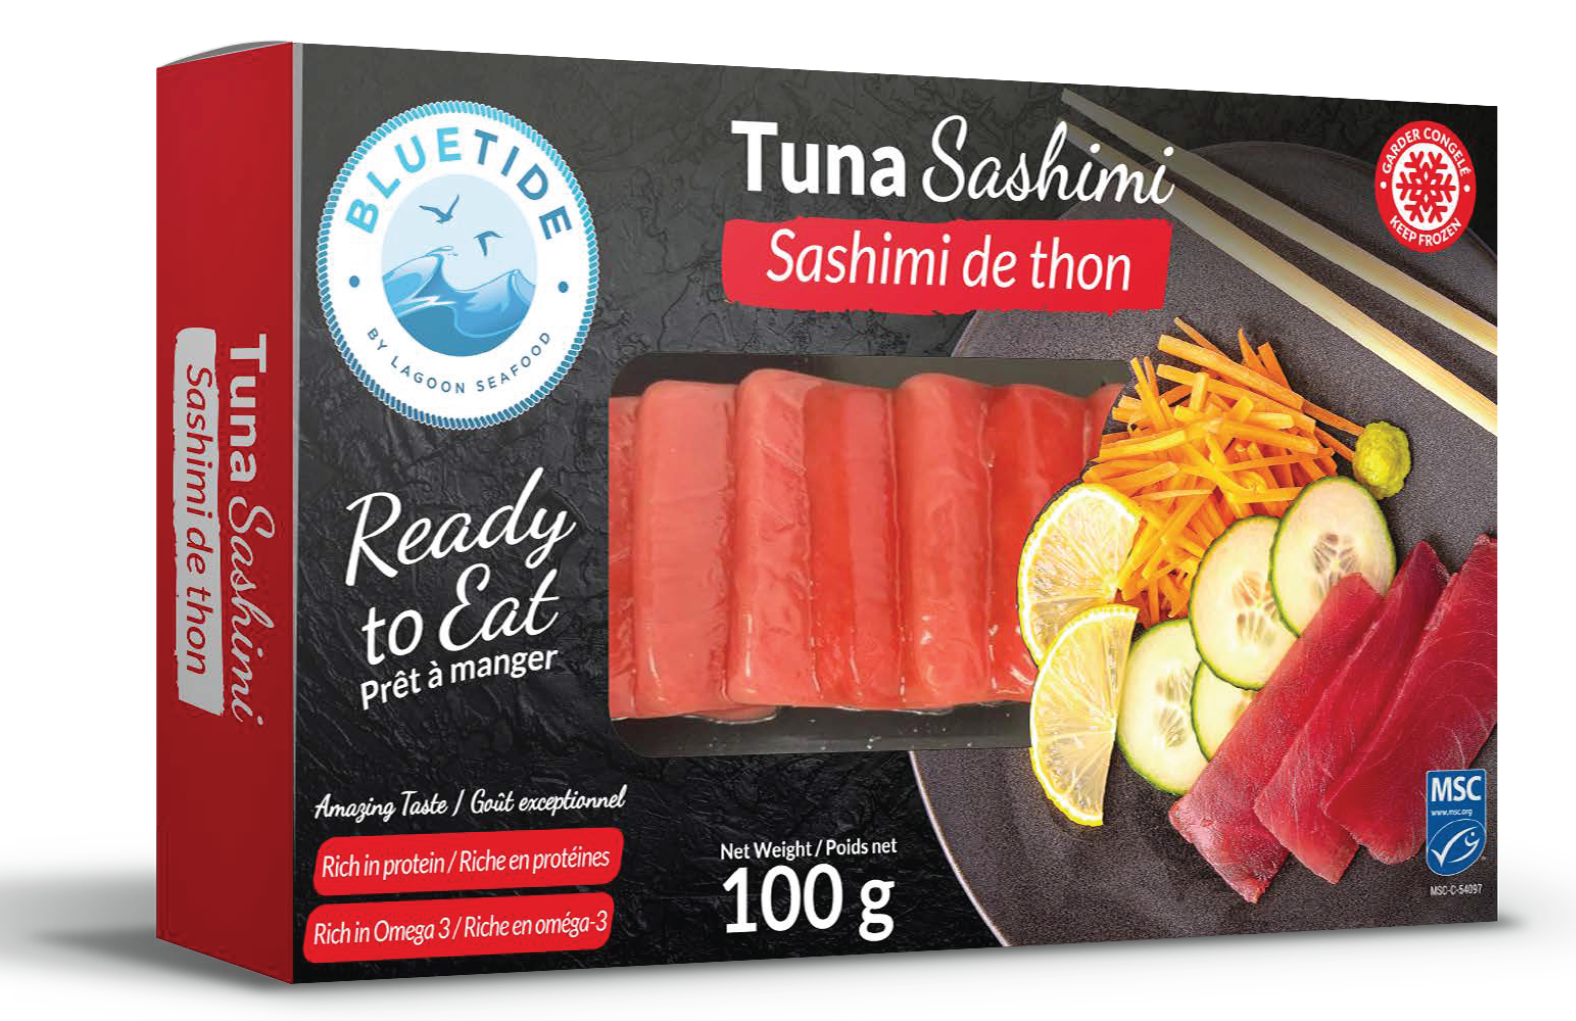 Tuna sashimi 100g – skin pack